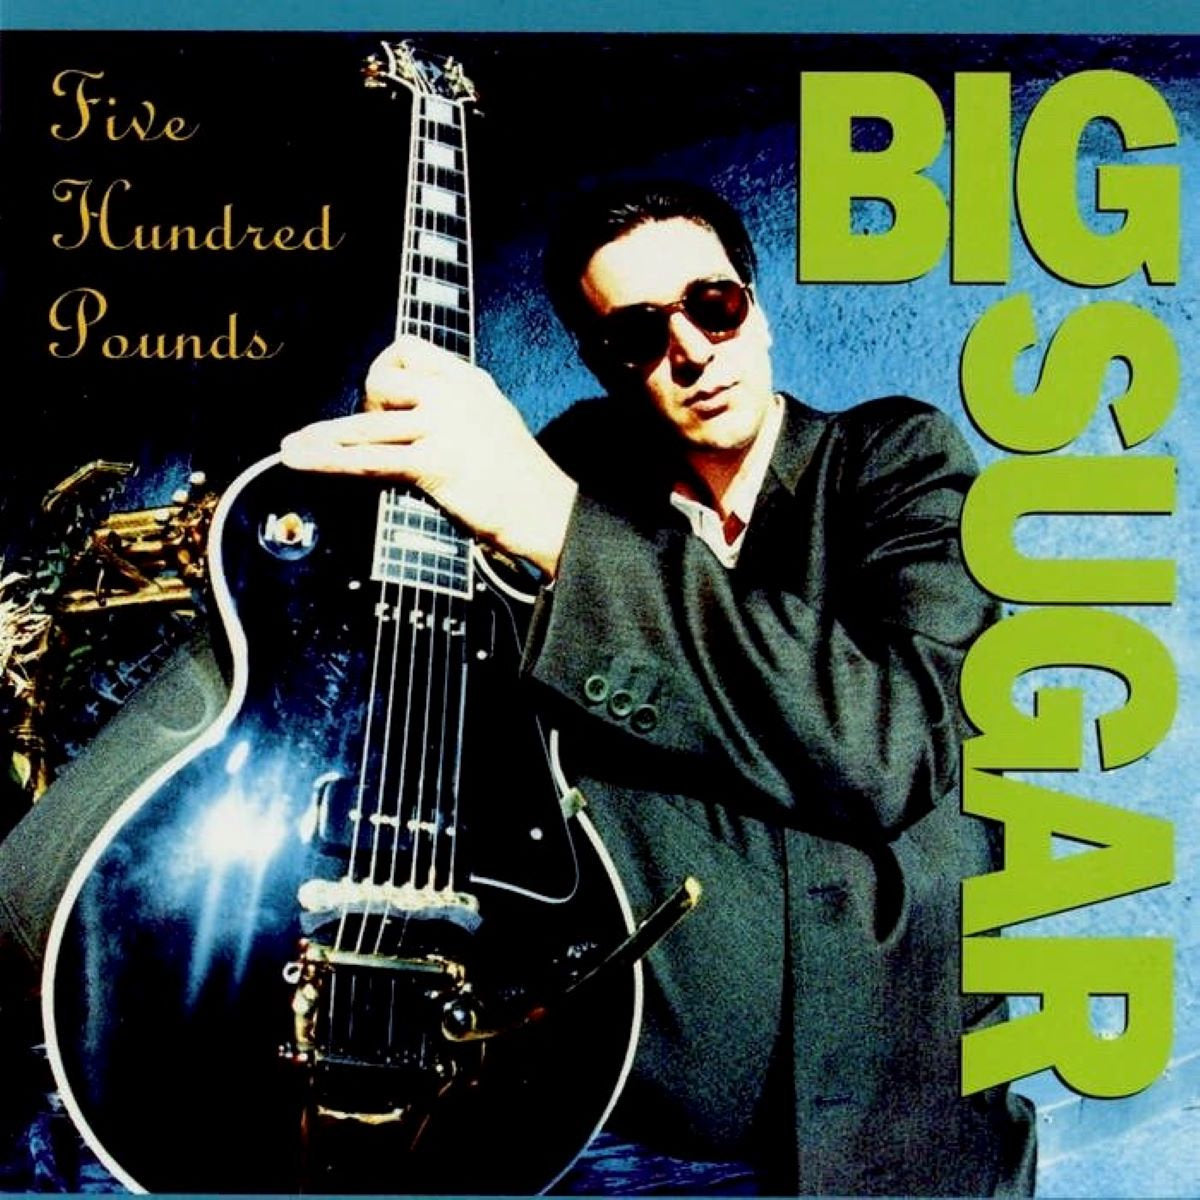 Big Sugar - Five Hundred Pounds (Vinyl LP)